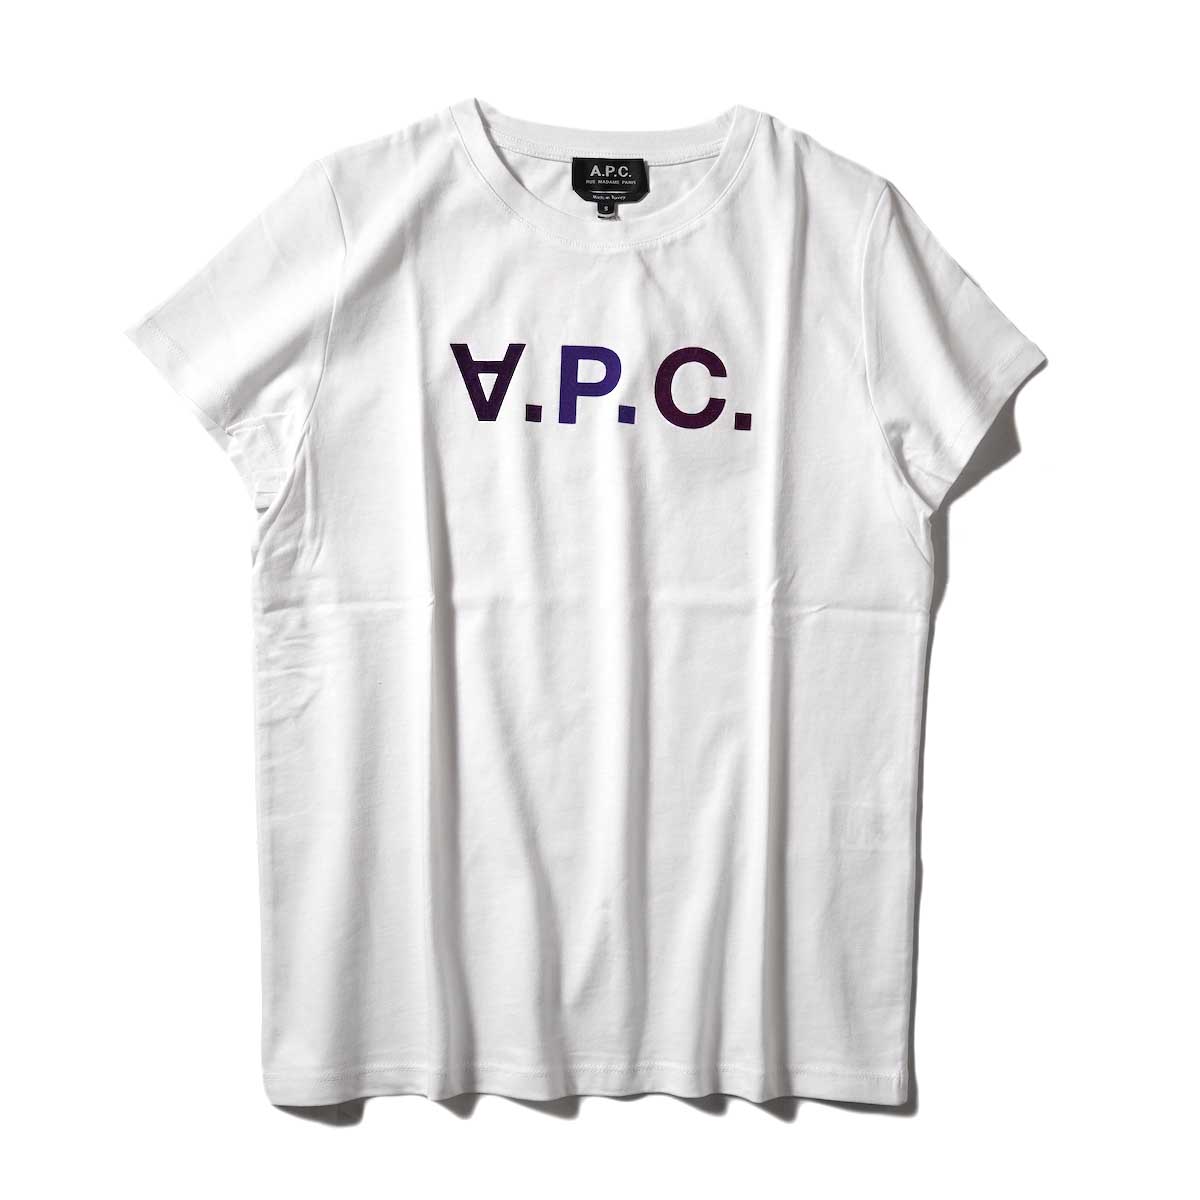 A.P.C. / VPC マルチカラーTシャツ (Violet)